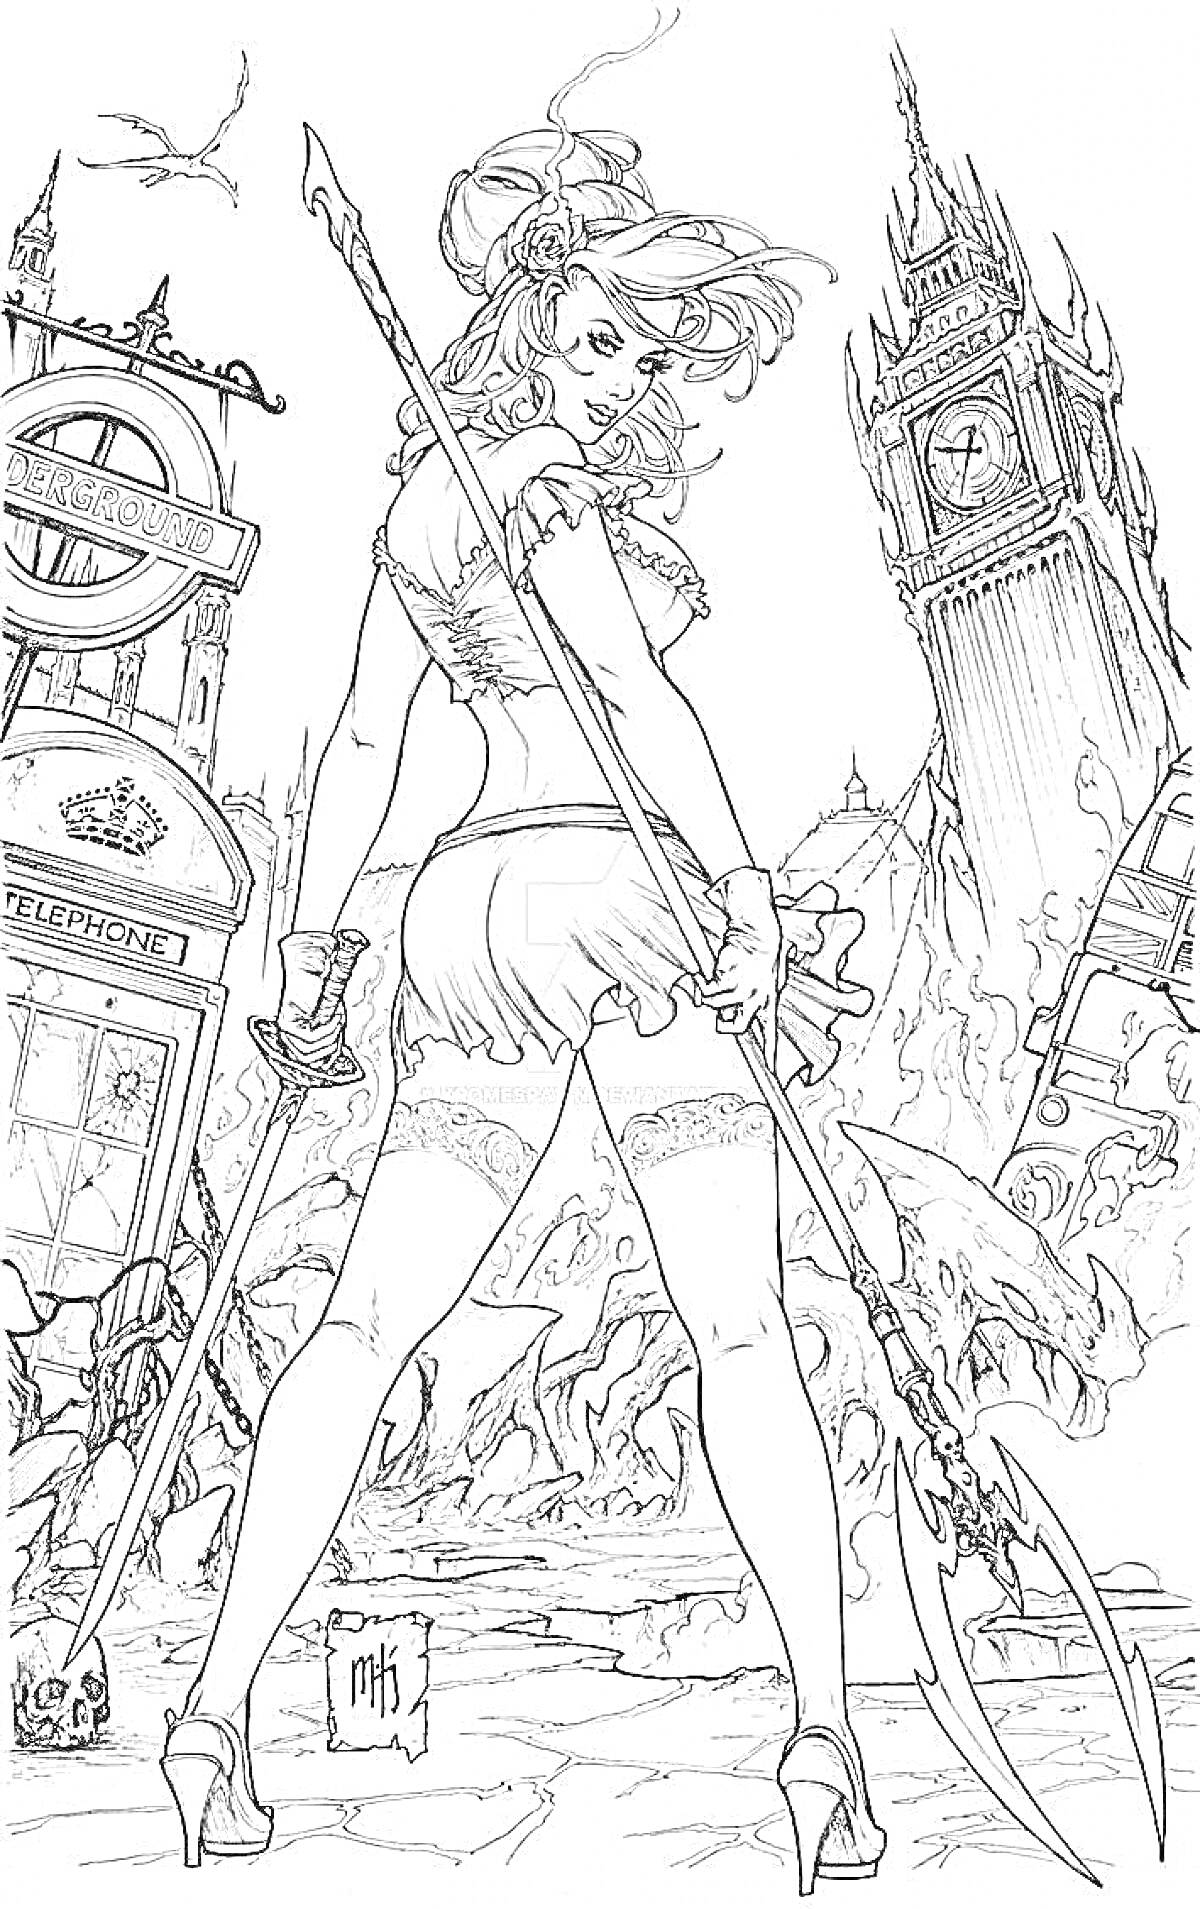 Женщина в короткой юбке и чулках с мечом в руке, на фоне разрушенного города с Биг Беном и телефонной будкой